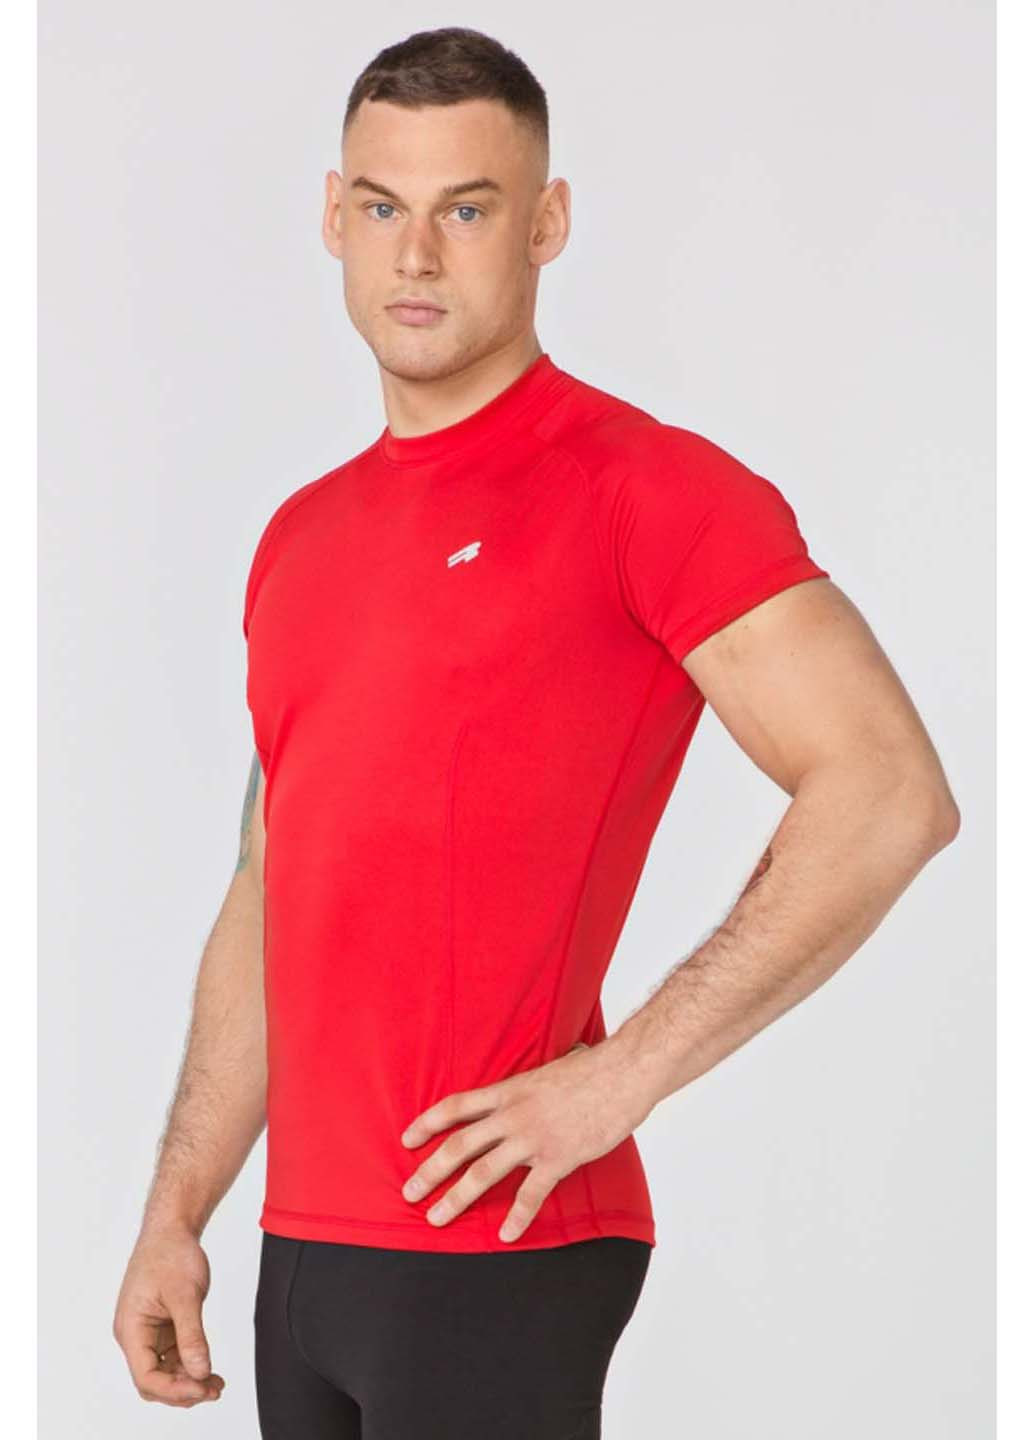 Спортивна футболка Radical однотонна червона спортивна поліестер